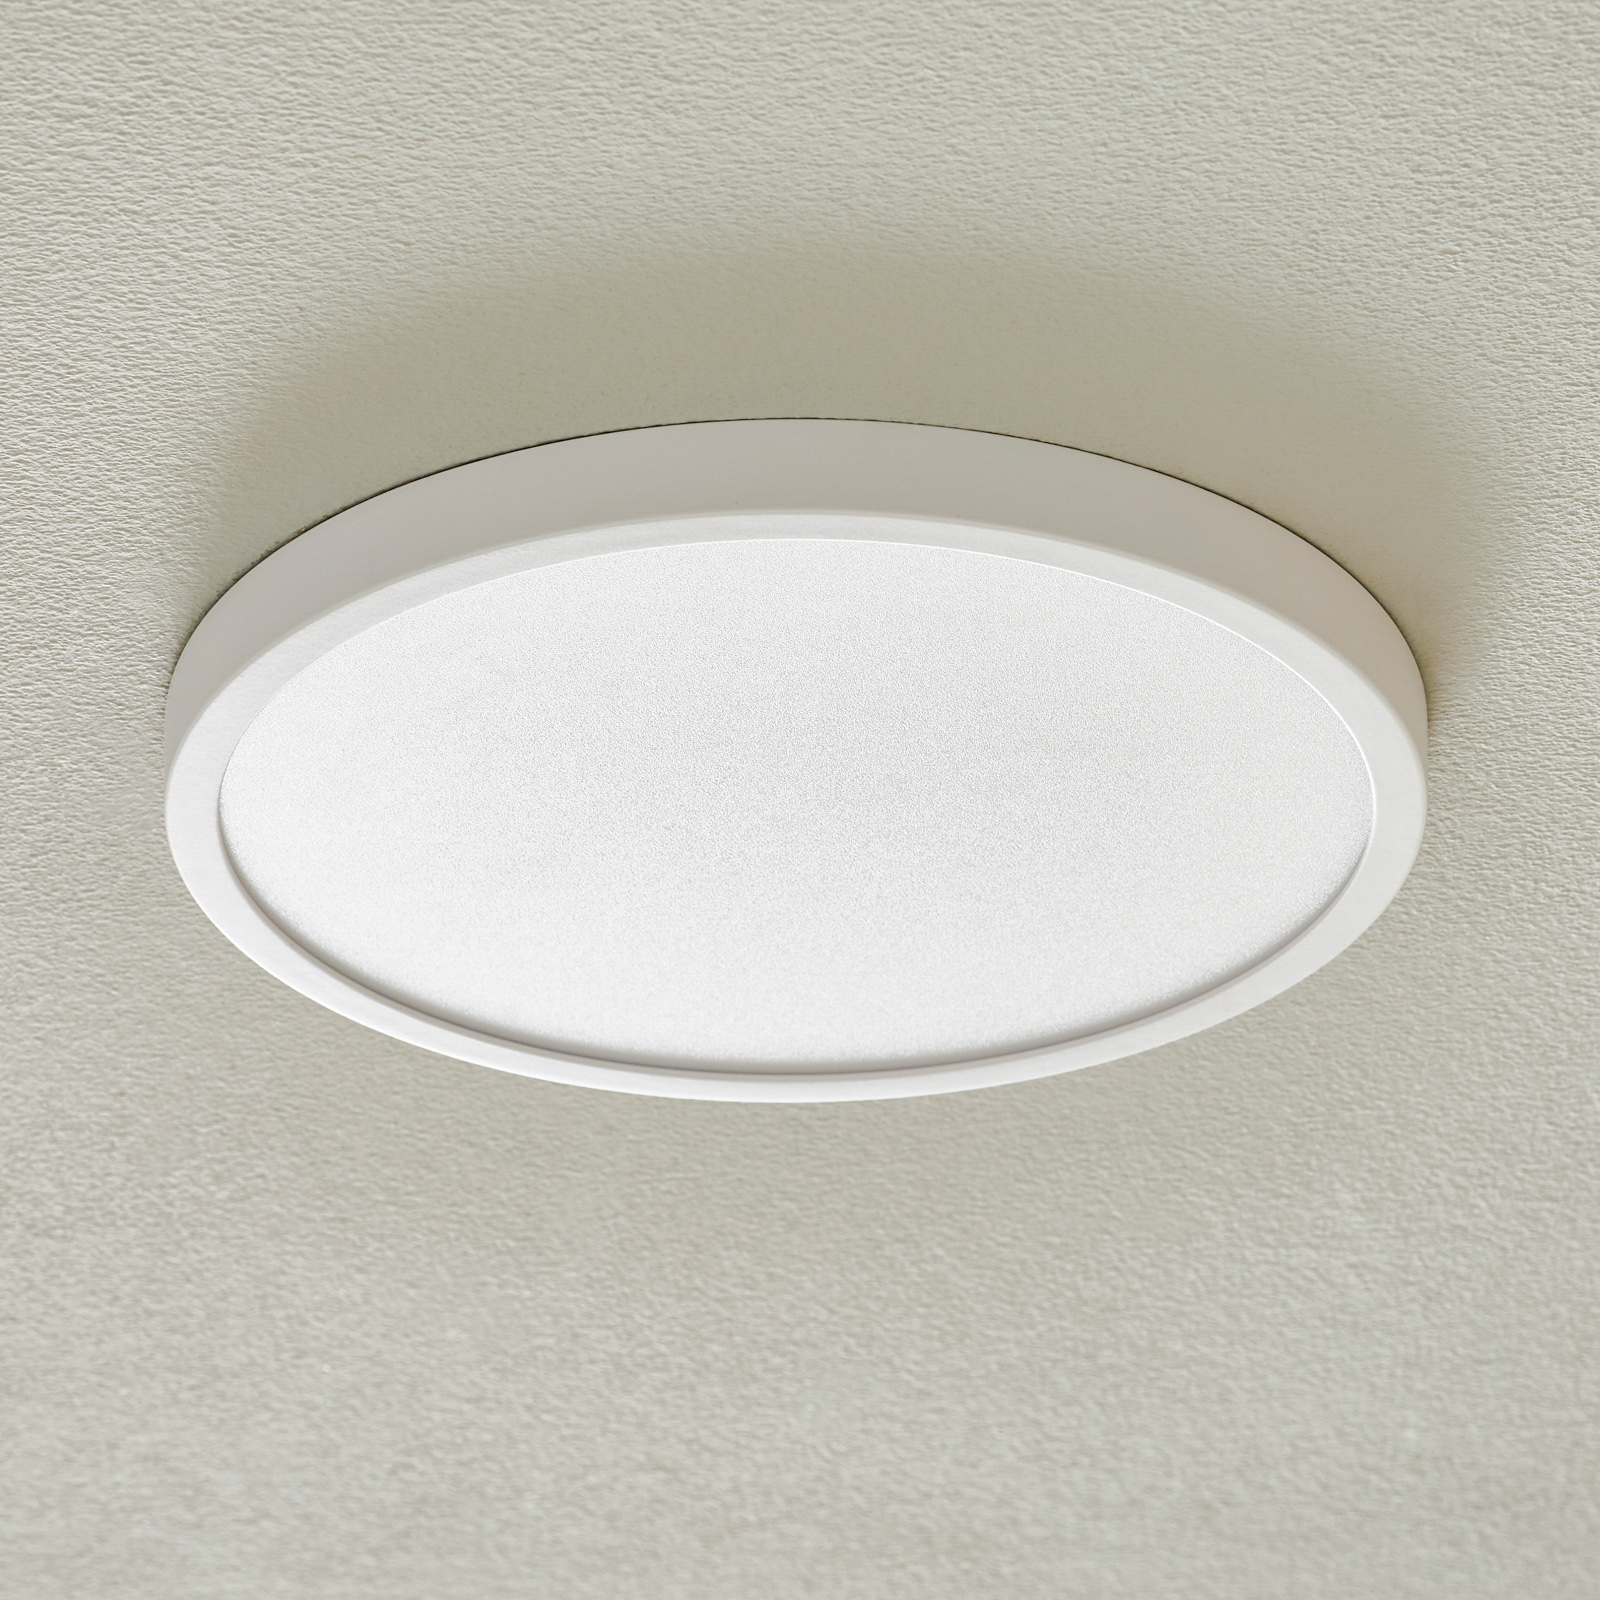 Vika LED ceiling light, round, white, Ø 30 cm